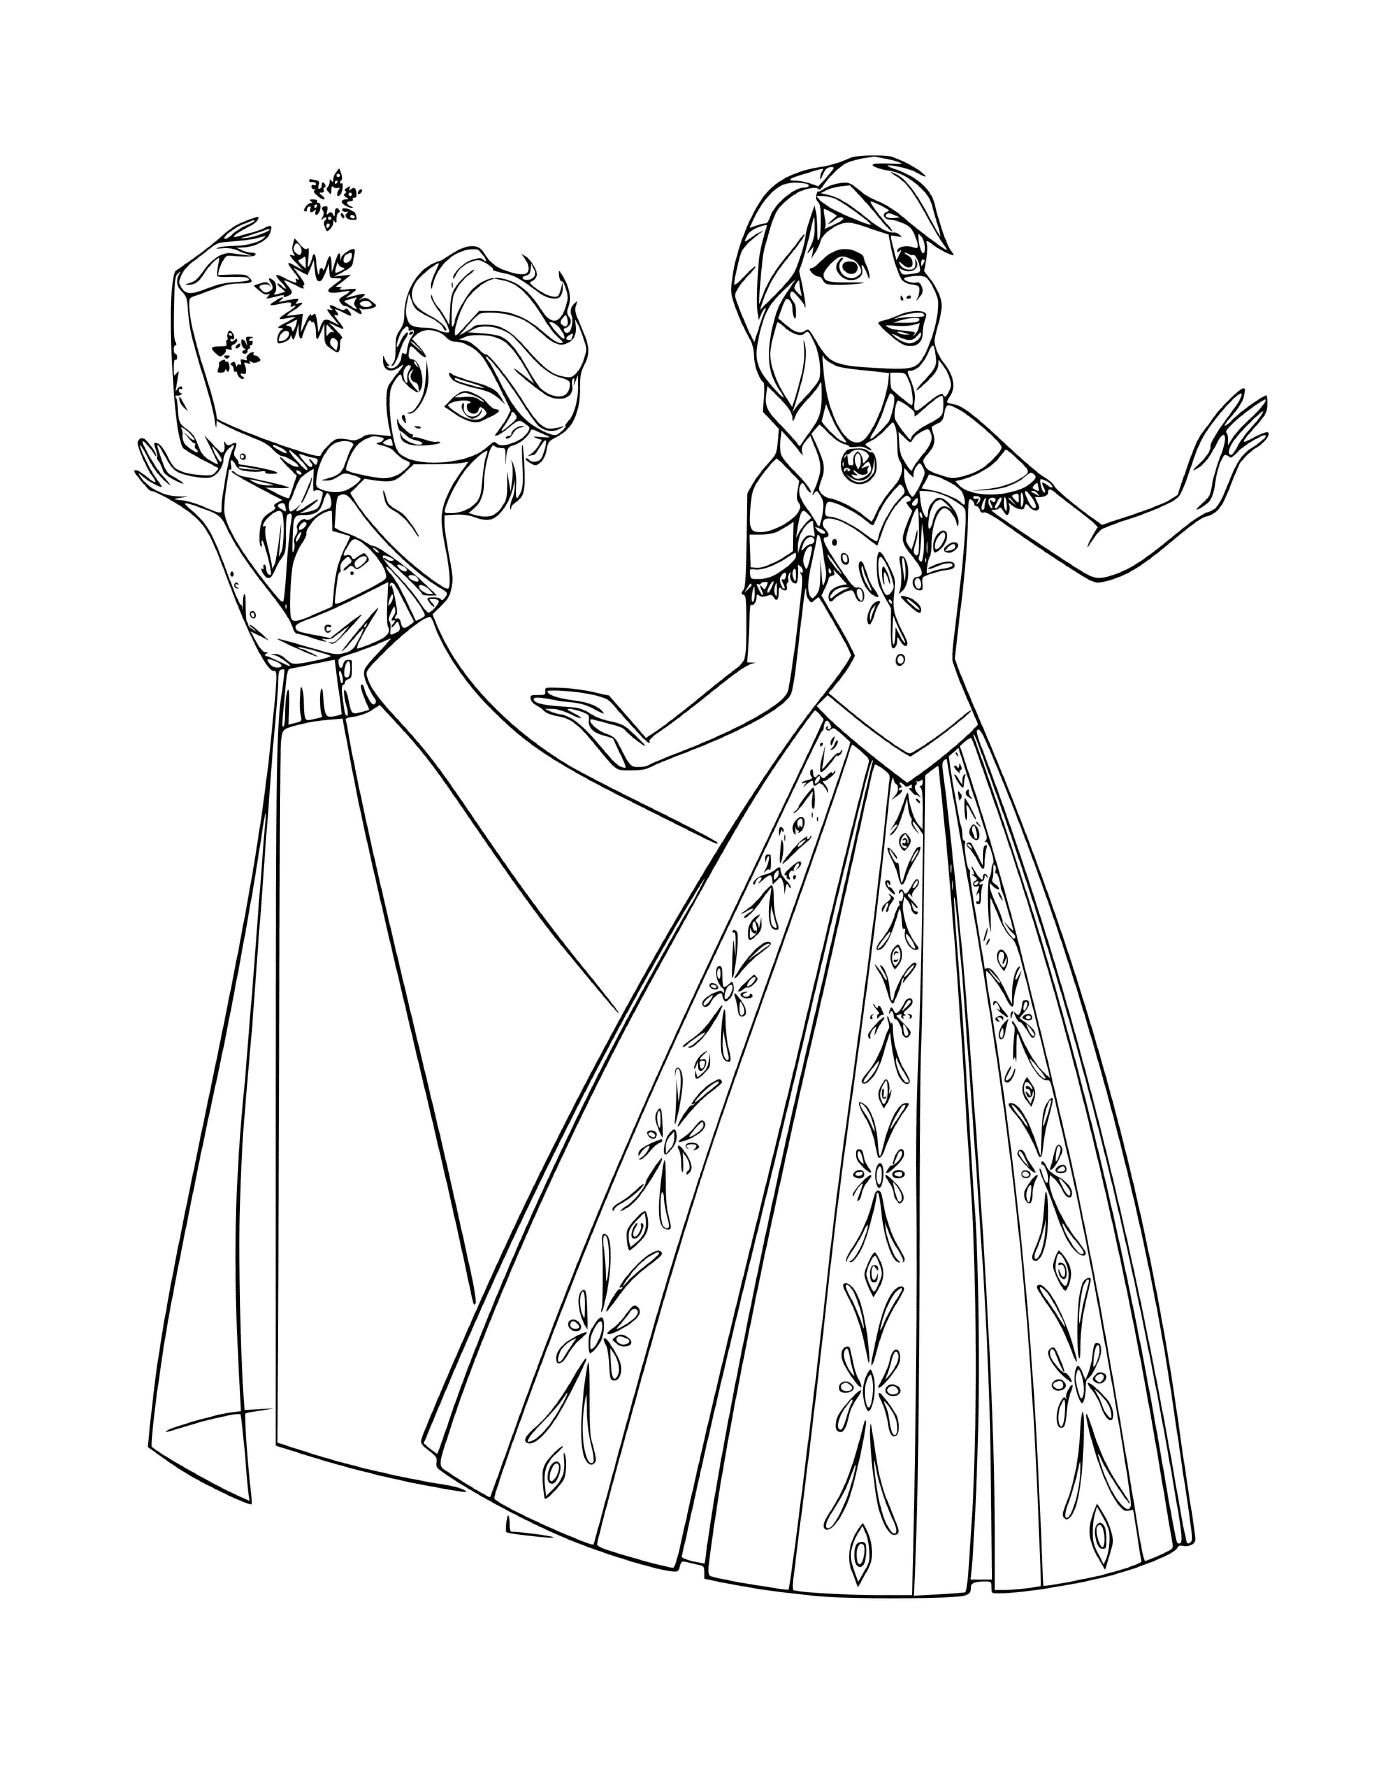   Anna et Elsa de La Reine des neiges 